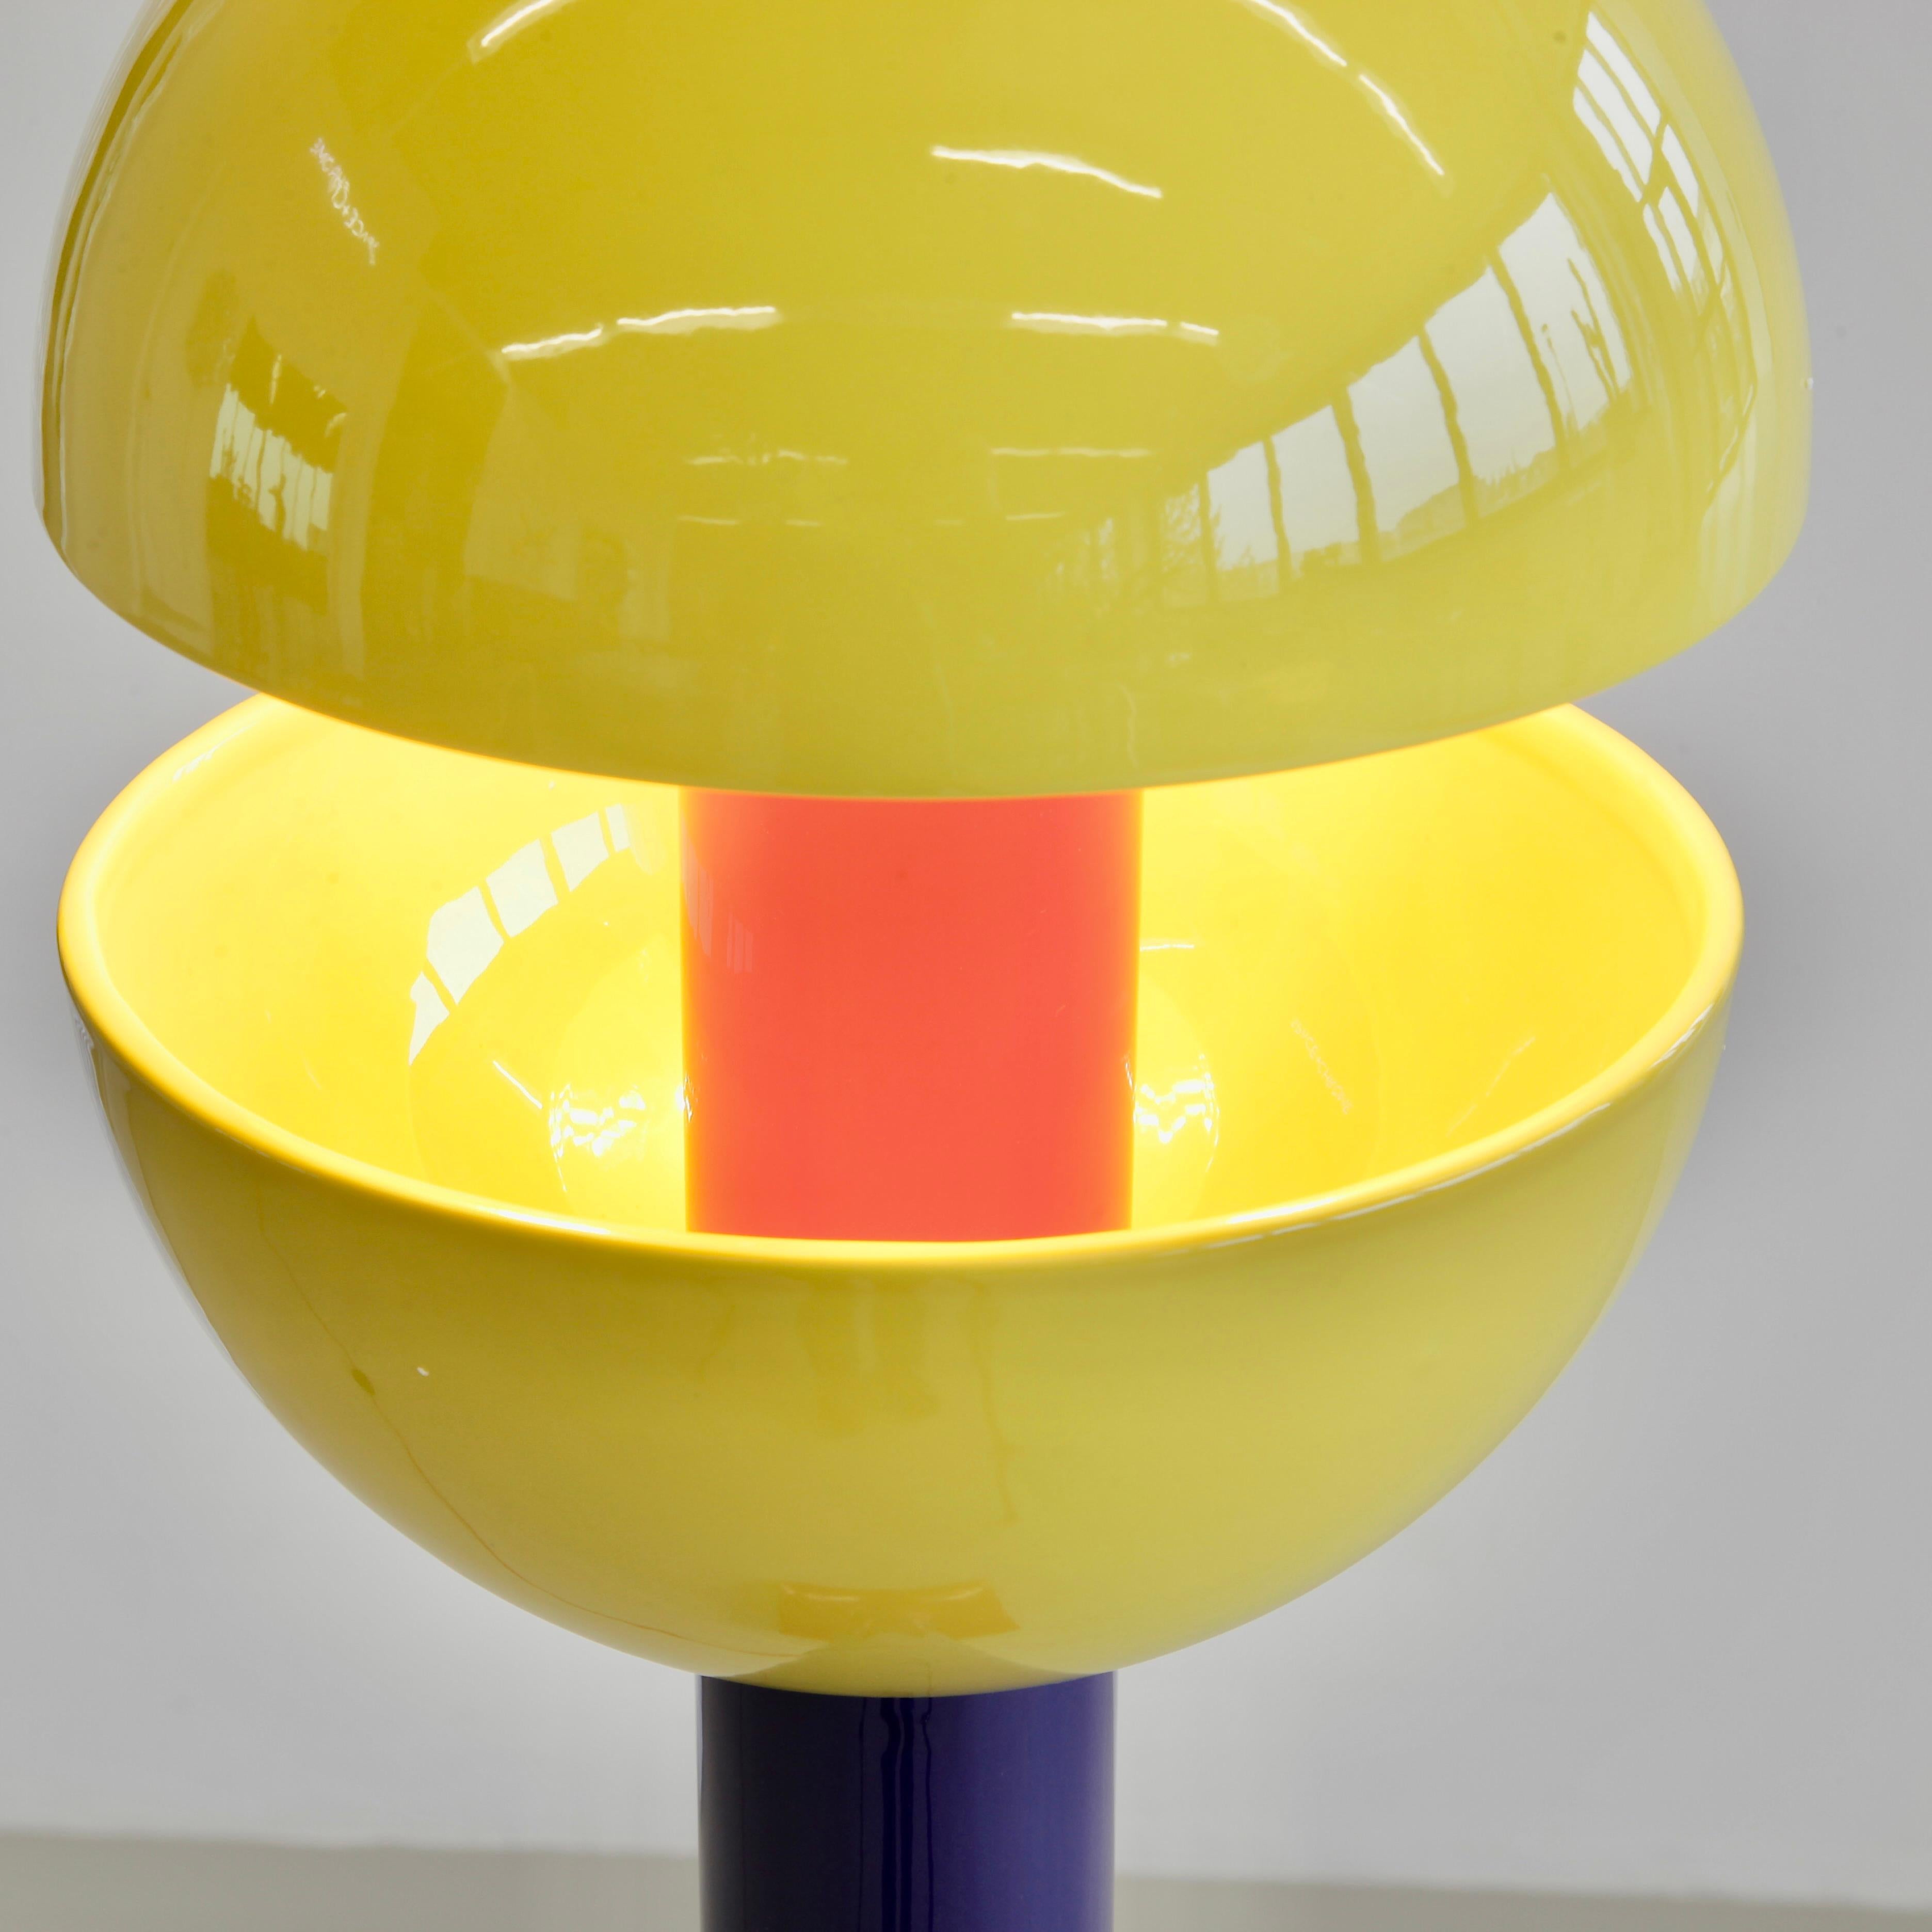 Modulare Stehleuchte aus Keramik, entworfen von Adelie Ducasse. Frankreich, Ducasse, 2022.

Stehlampe aus Keramik, bestehend aus einer Auswahl modularer Teile, einem Lampenschirm aus Keramik und zwei LED-Glühbirnen. Entworfen in Paris,